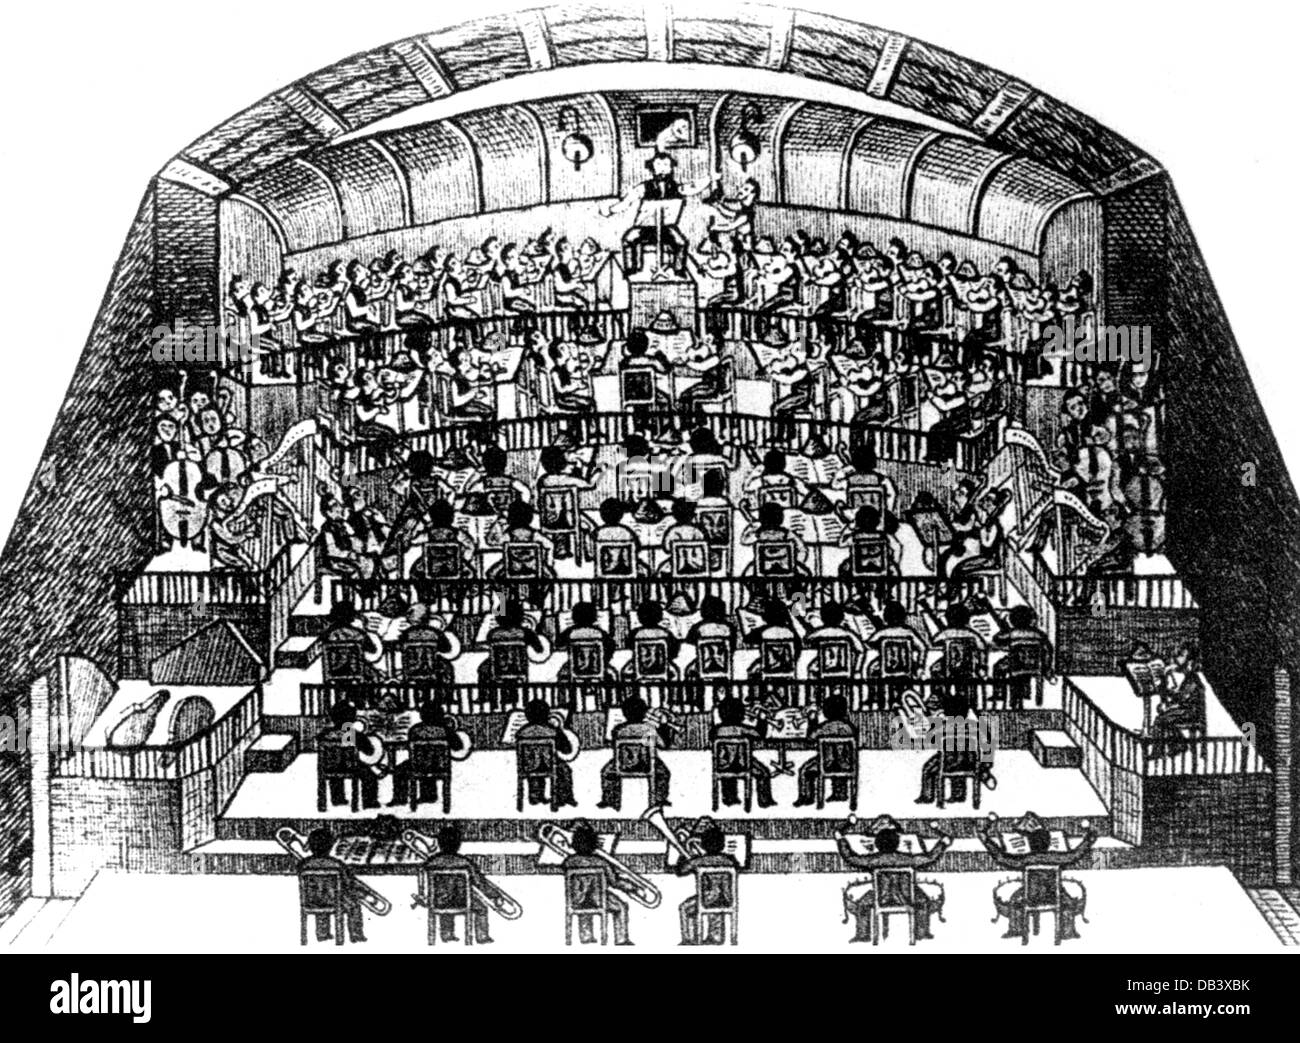 théâtre, opéra, 'Parsifal', de Richard Wagner, répétition d'orchestre dirigée par Hermann Levi, dessin, 1882, droits additionnels-Clearences-non disponible Banque D'Images